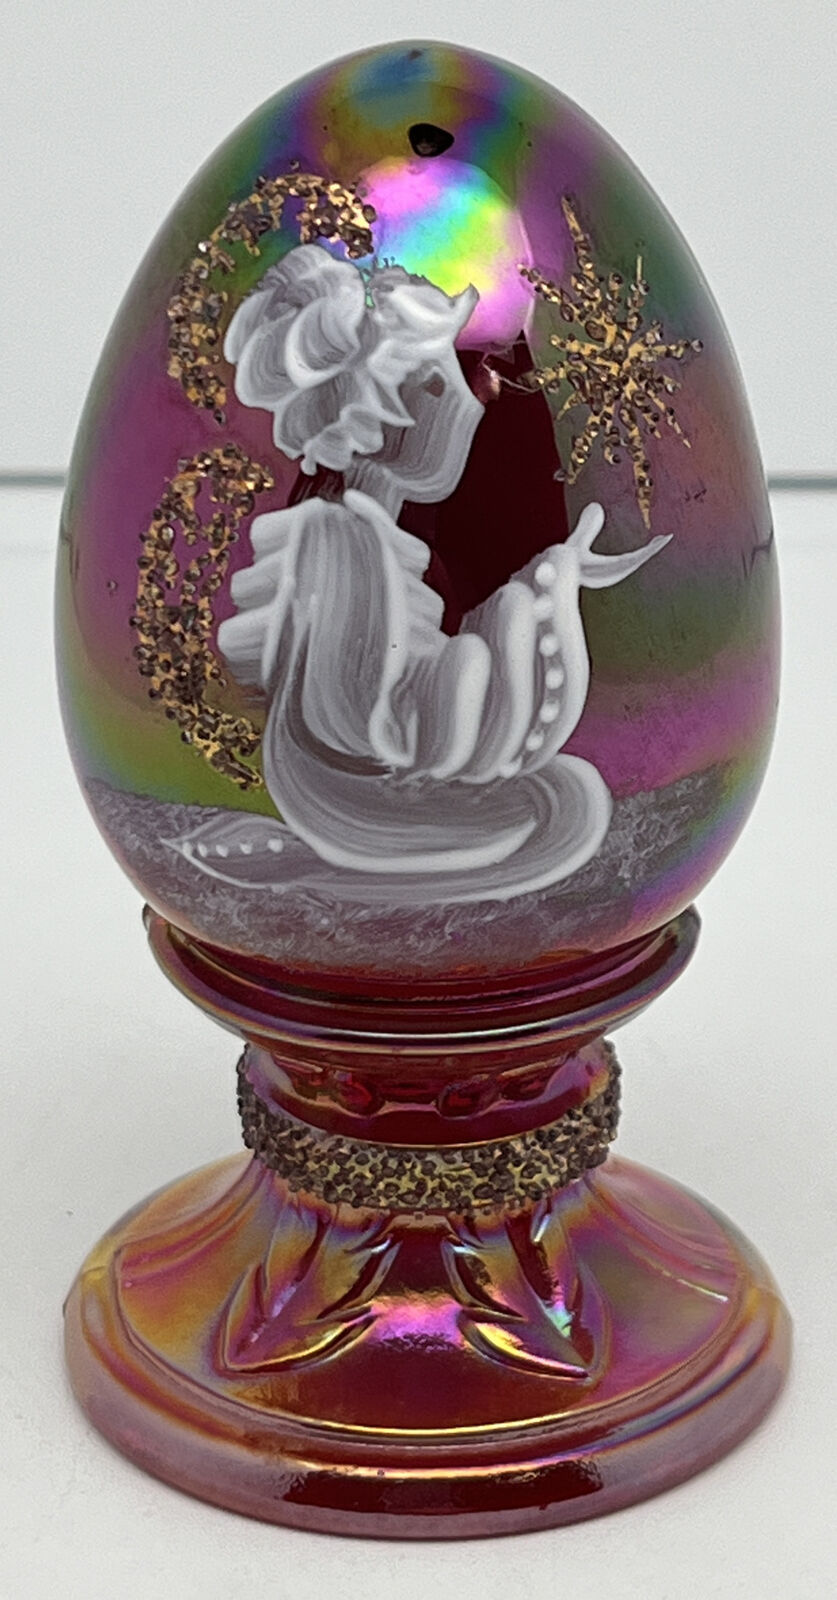 Fenton Handpainted Egg W/ Angel Christmas Figurine 1995 Signed LTD ED #2349/2500 - $42.03